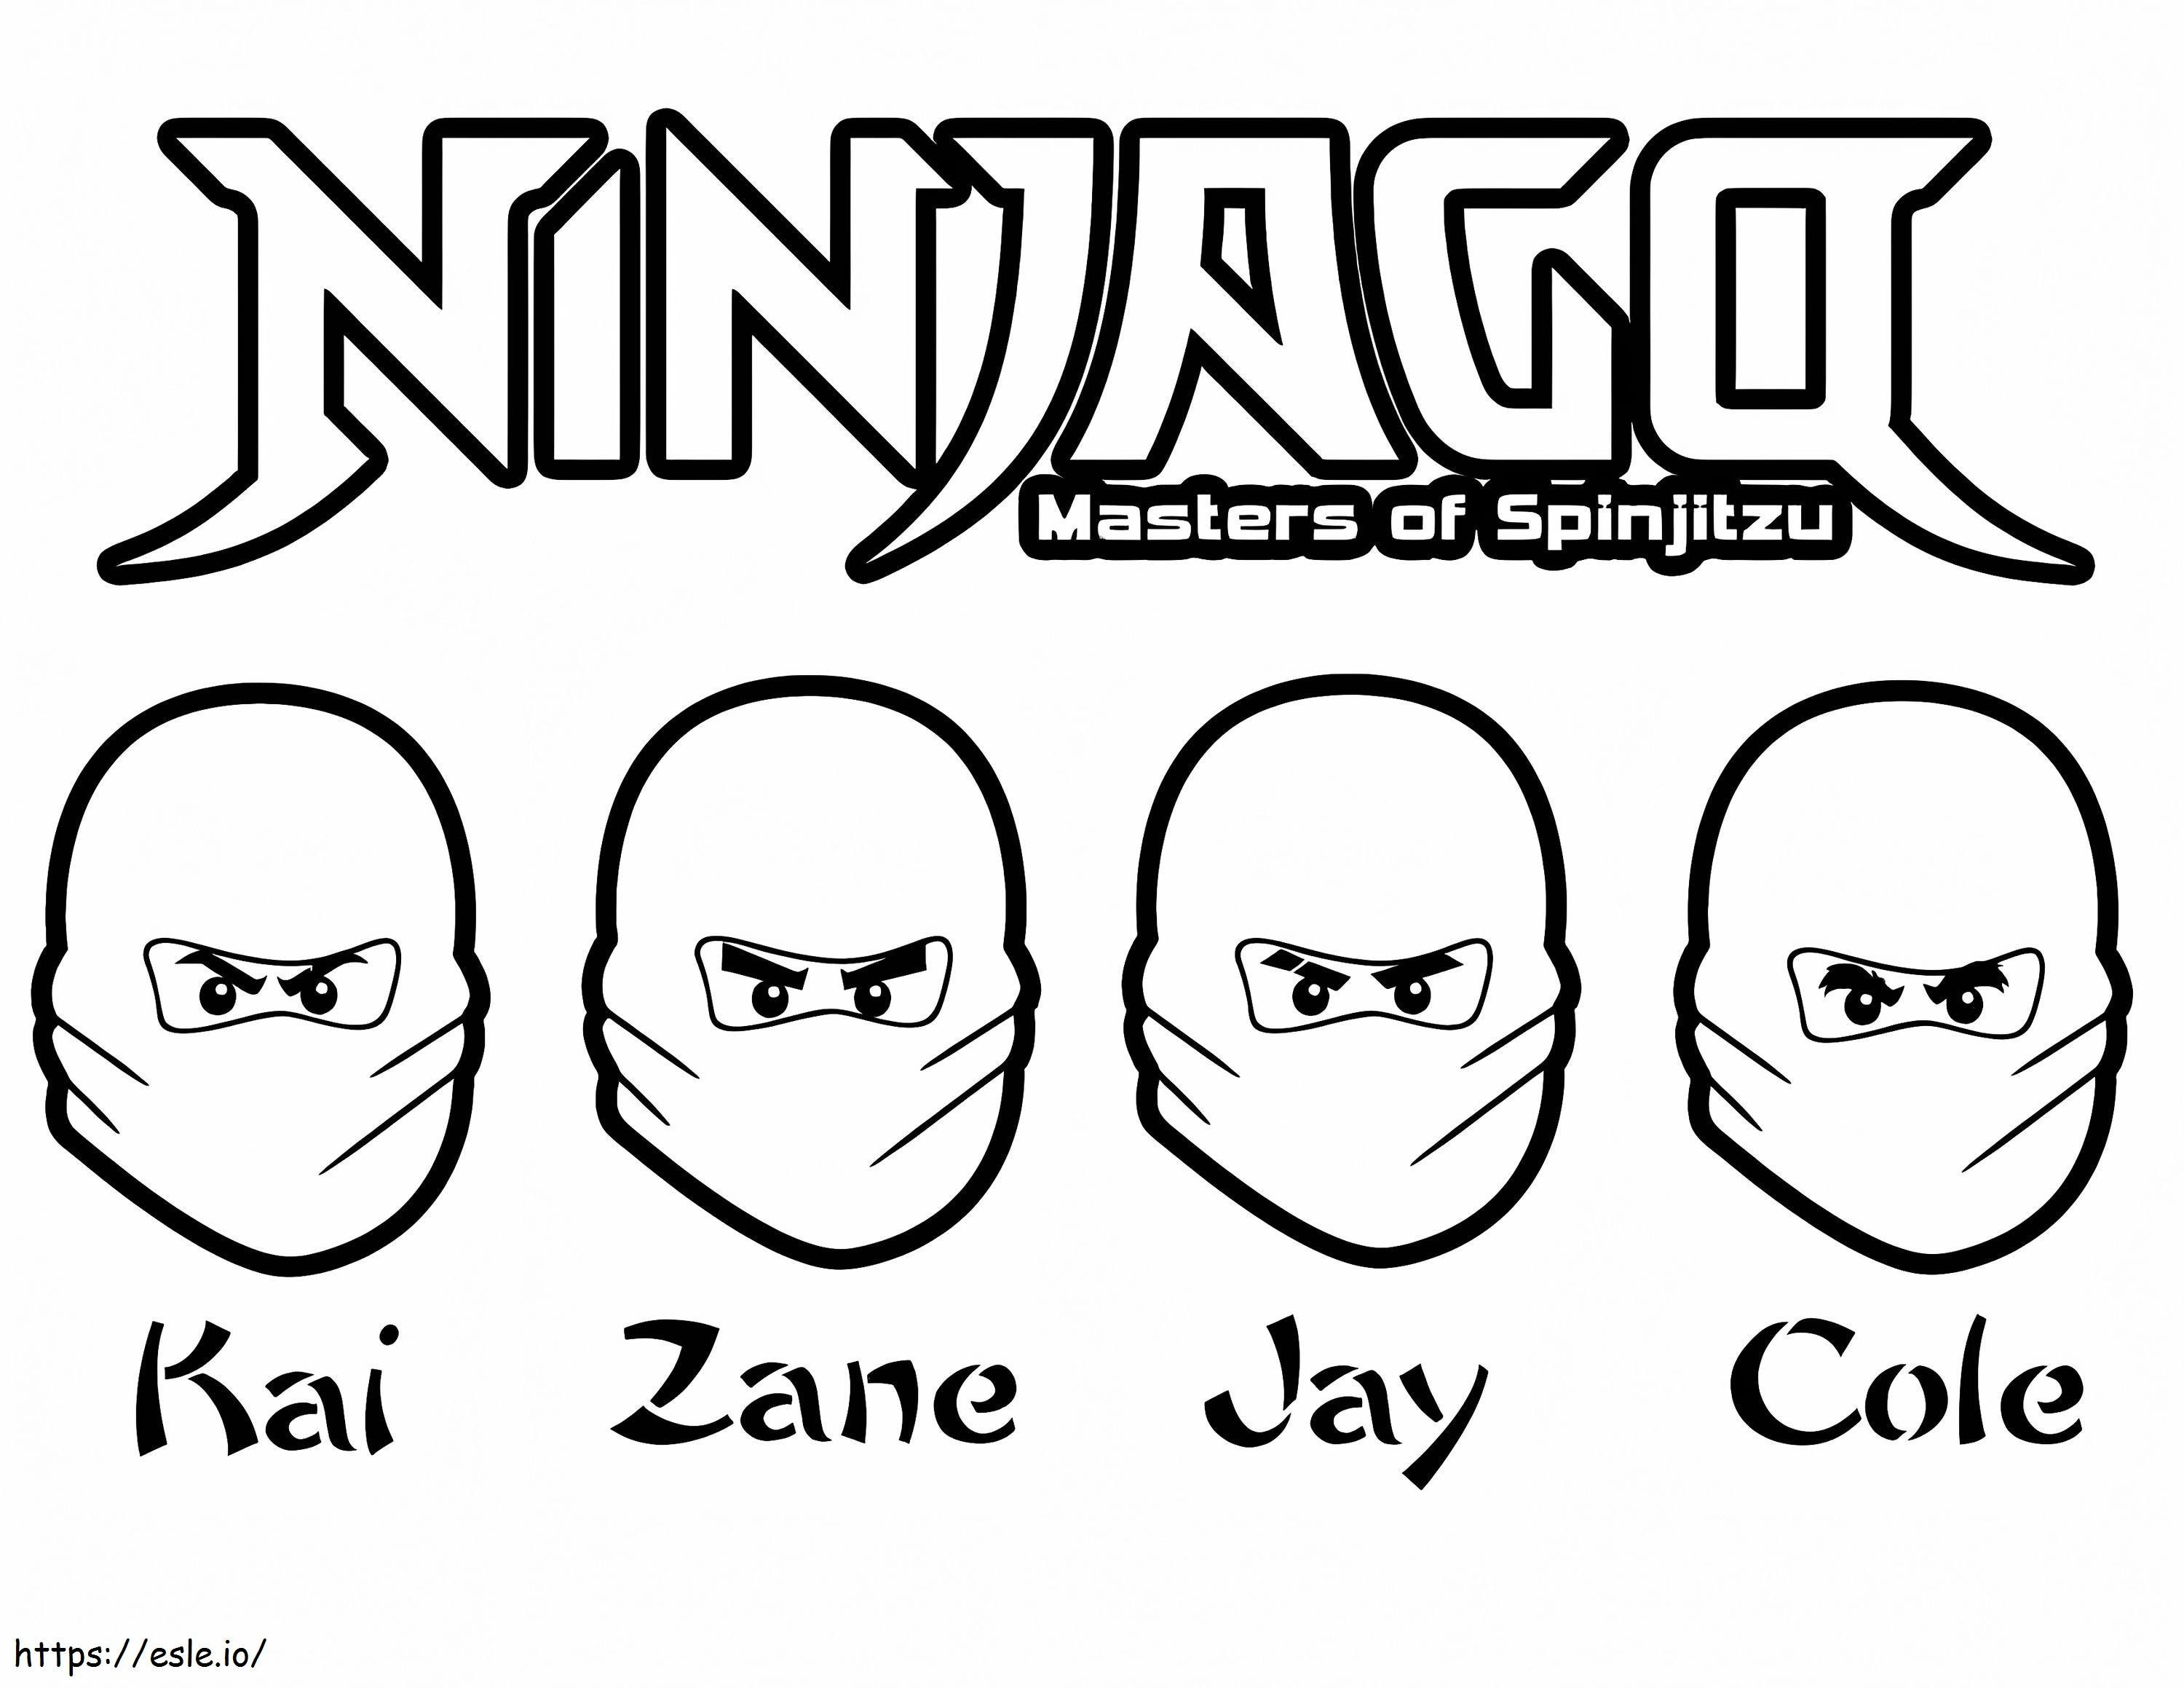 Ninjago For Kids coloring page